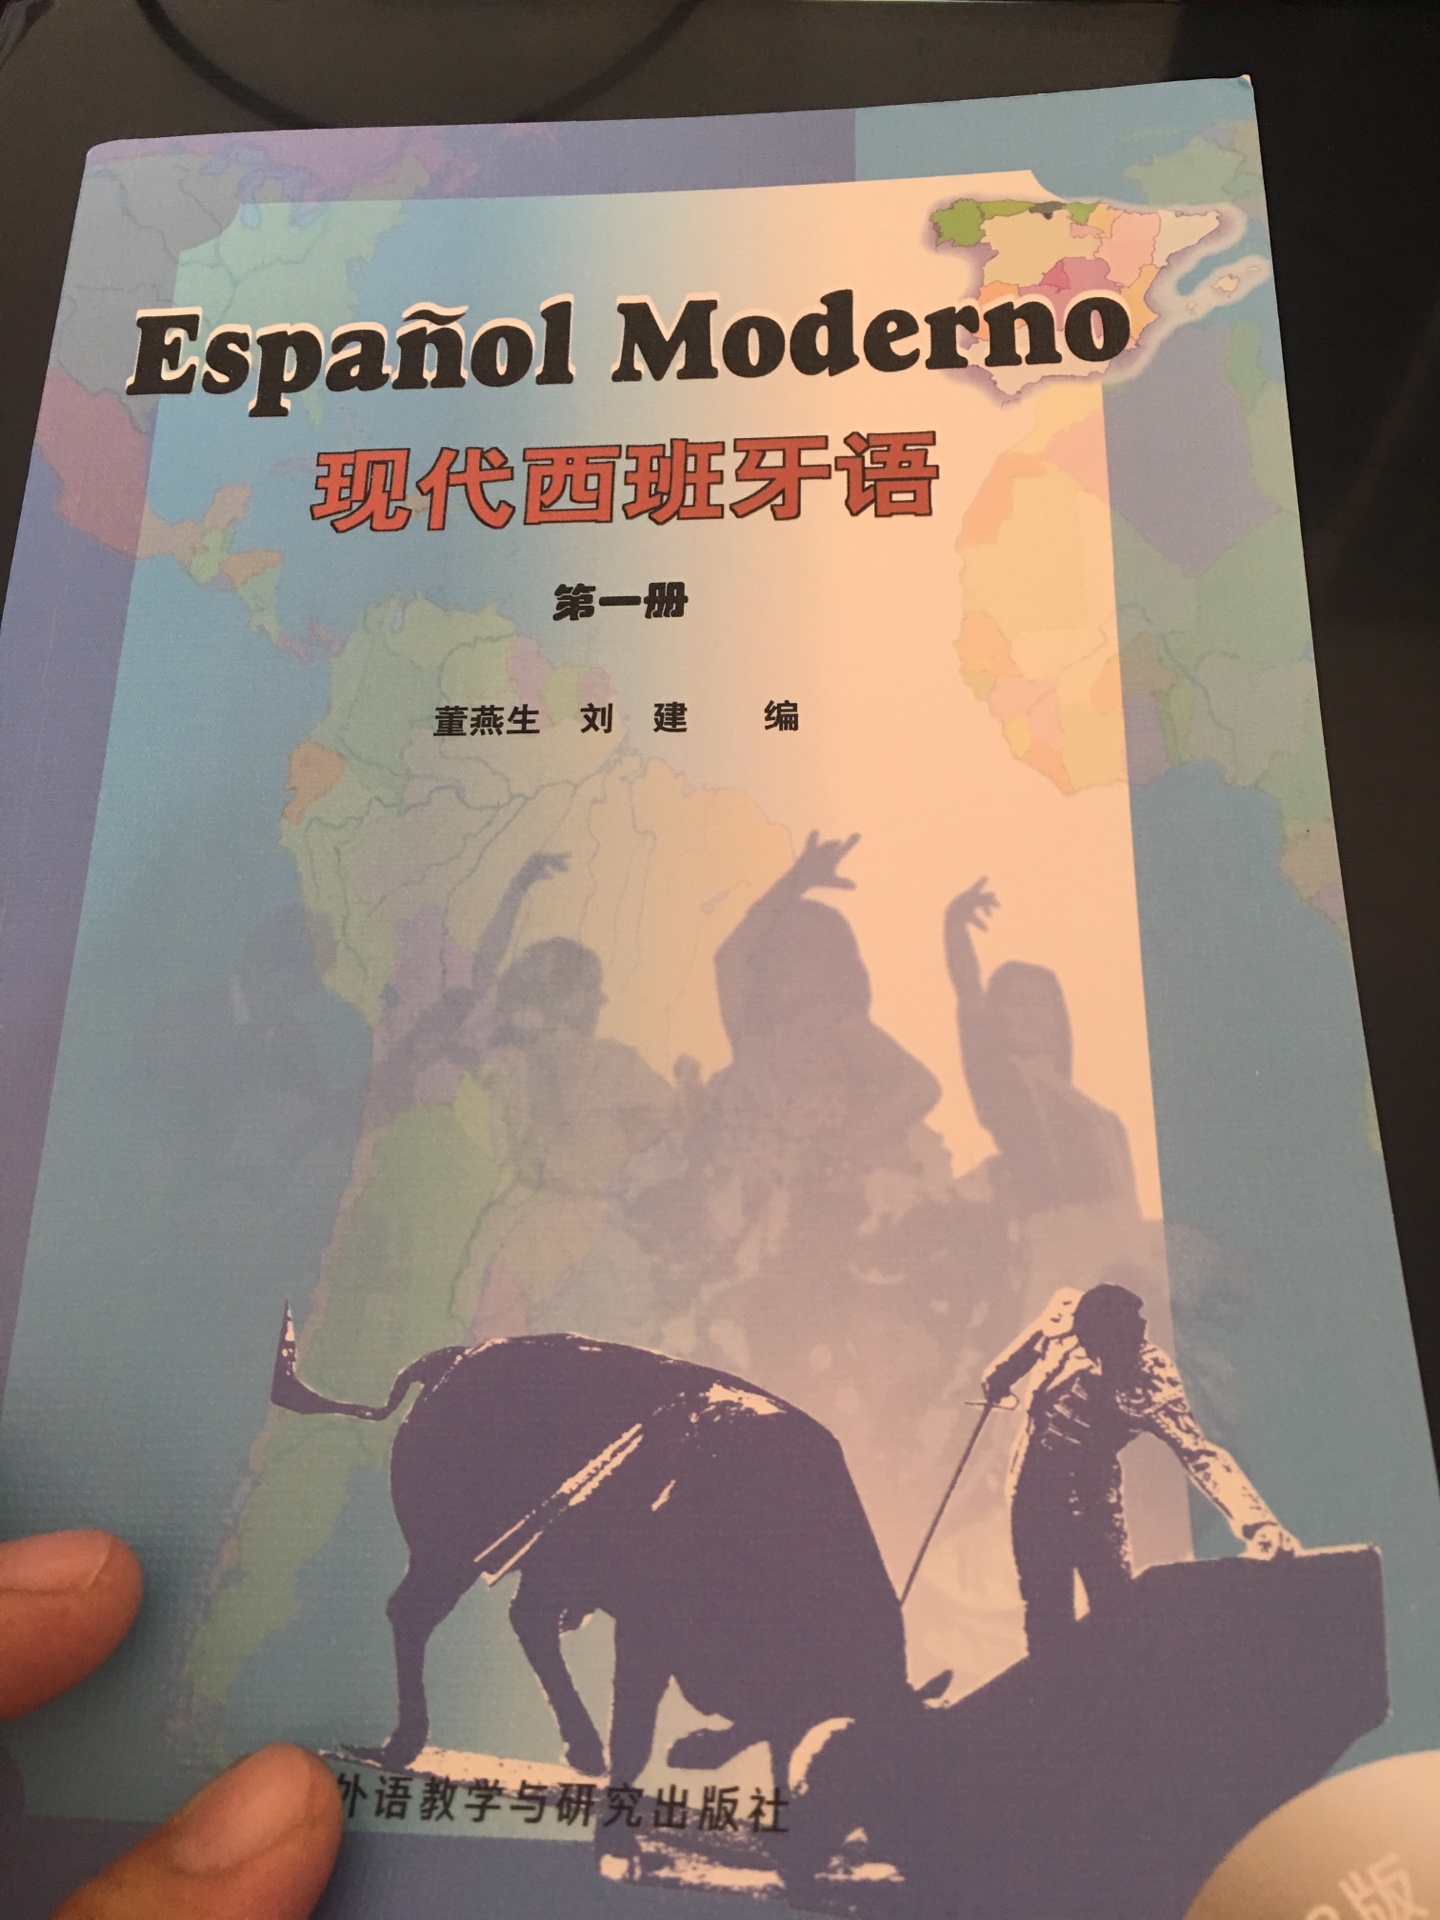 之前有本现代西班牙语第一册，休假之前给我同事了，自己再买本吧。